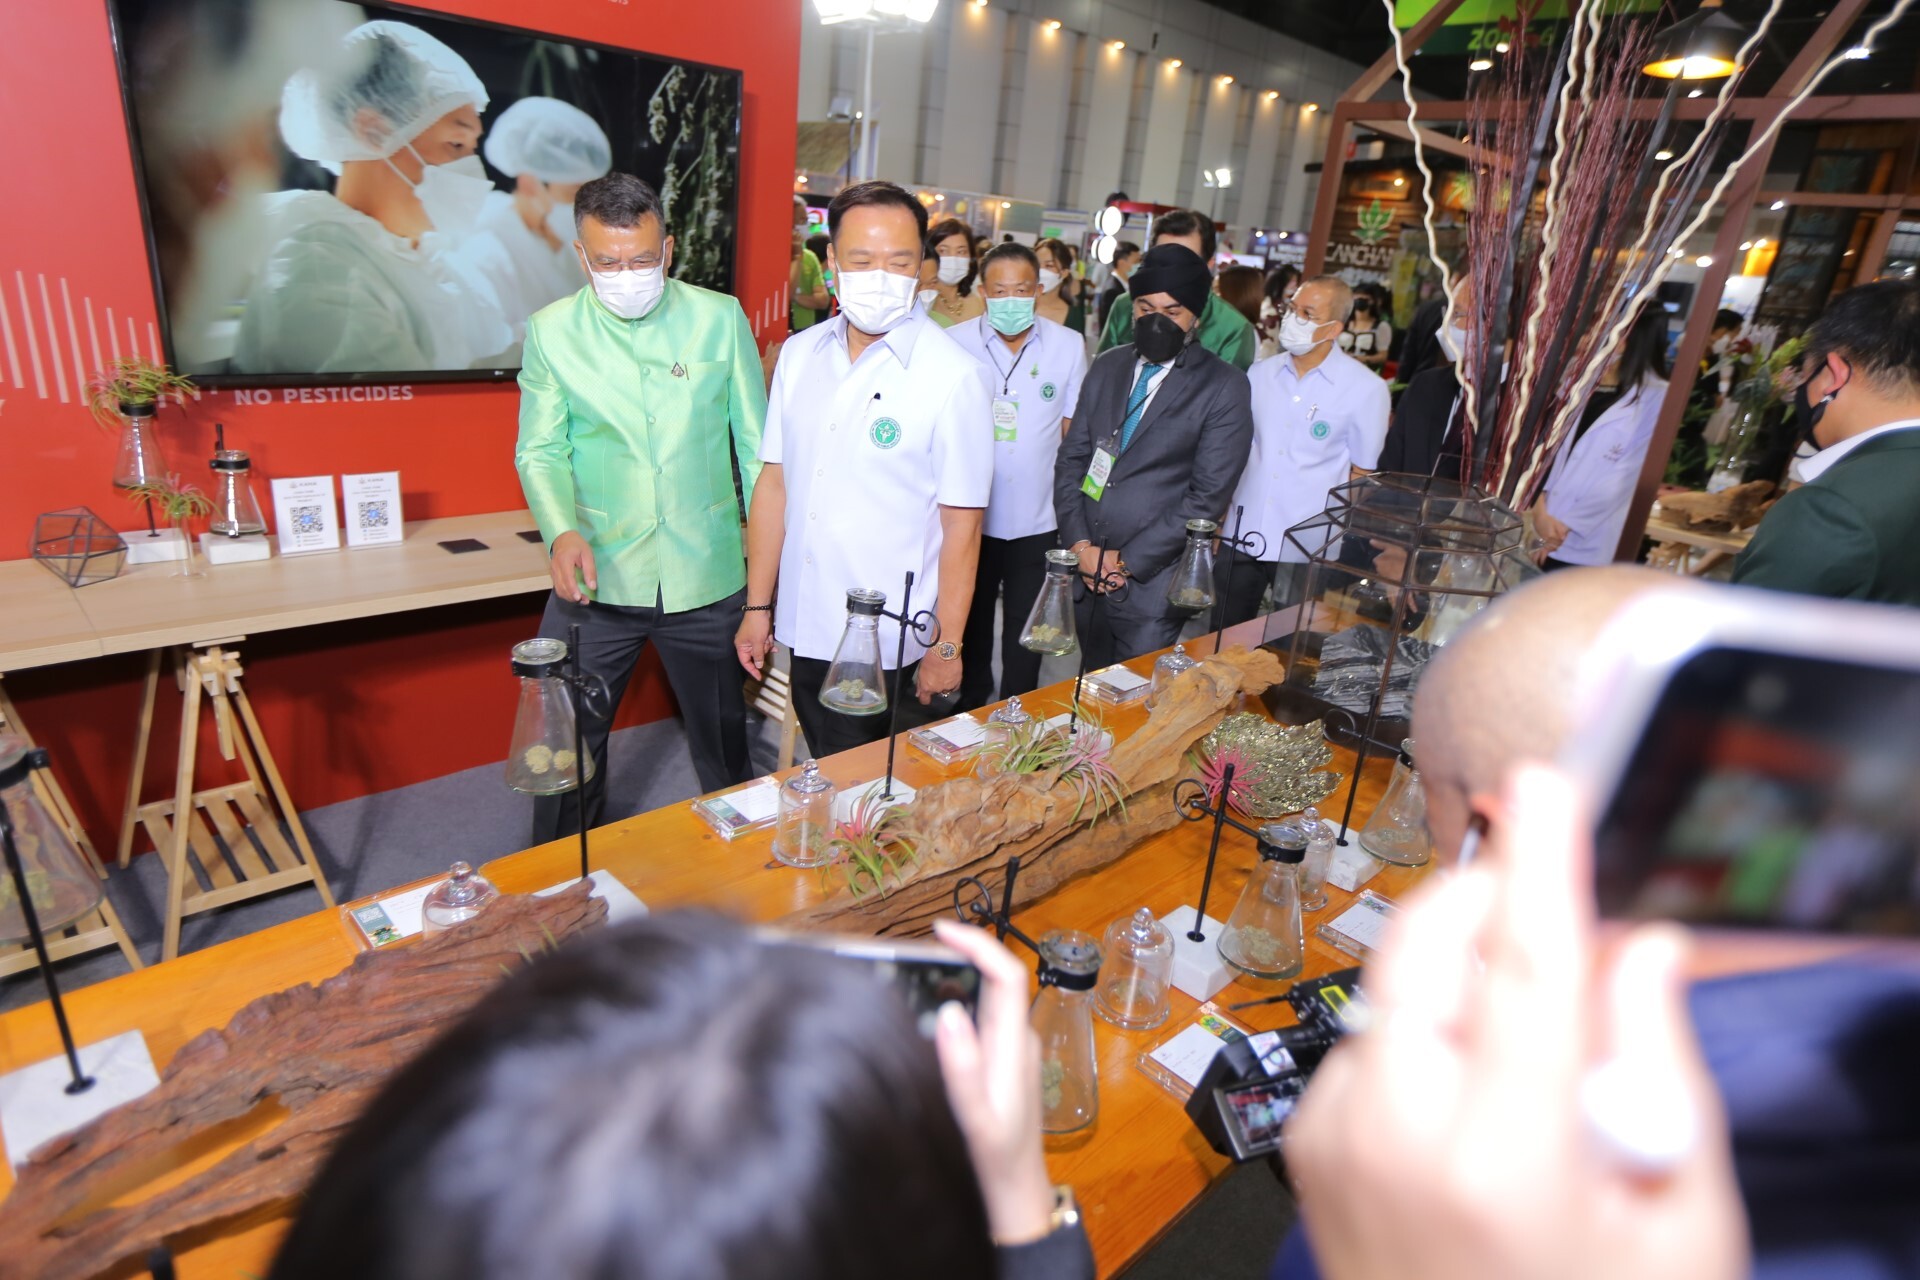 "บีสโปคฯ" ในเครือ "บูทิค คอร์ปอเรชั่น"  นำแบรนด์ KANA ร่วมงาน Thai herbal expo 2022  ย้ำ หนึ่งในผู้นำคลินิกกัญชาเพื่อสุขภาพระดับไฮเอนด์